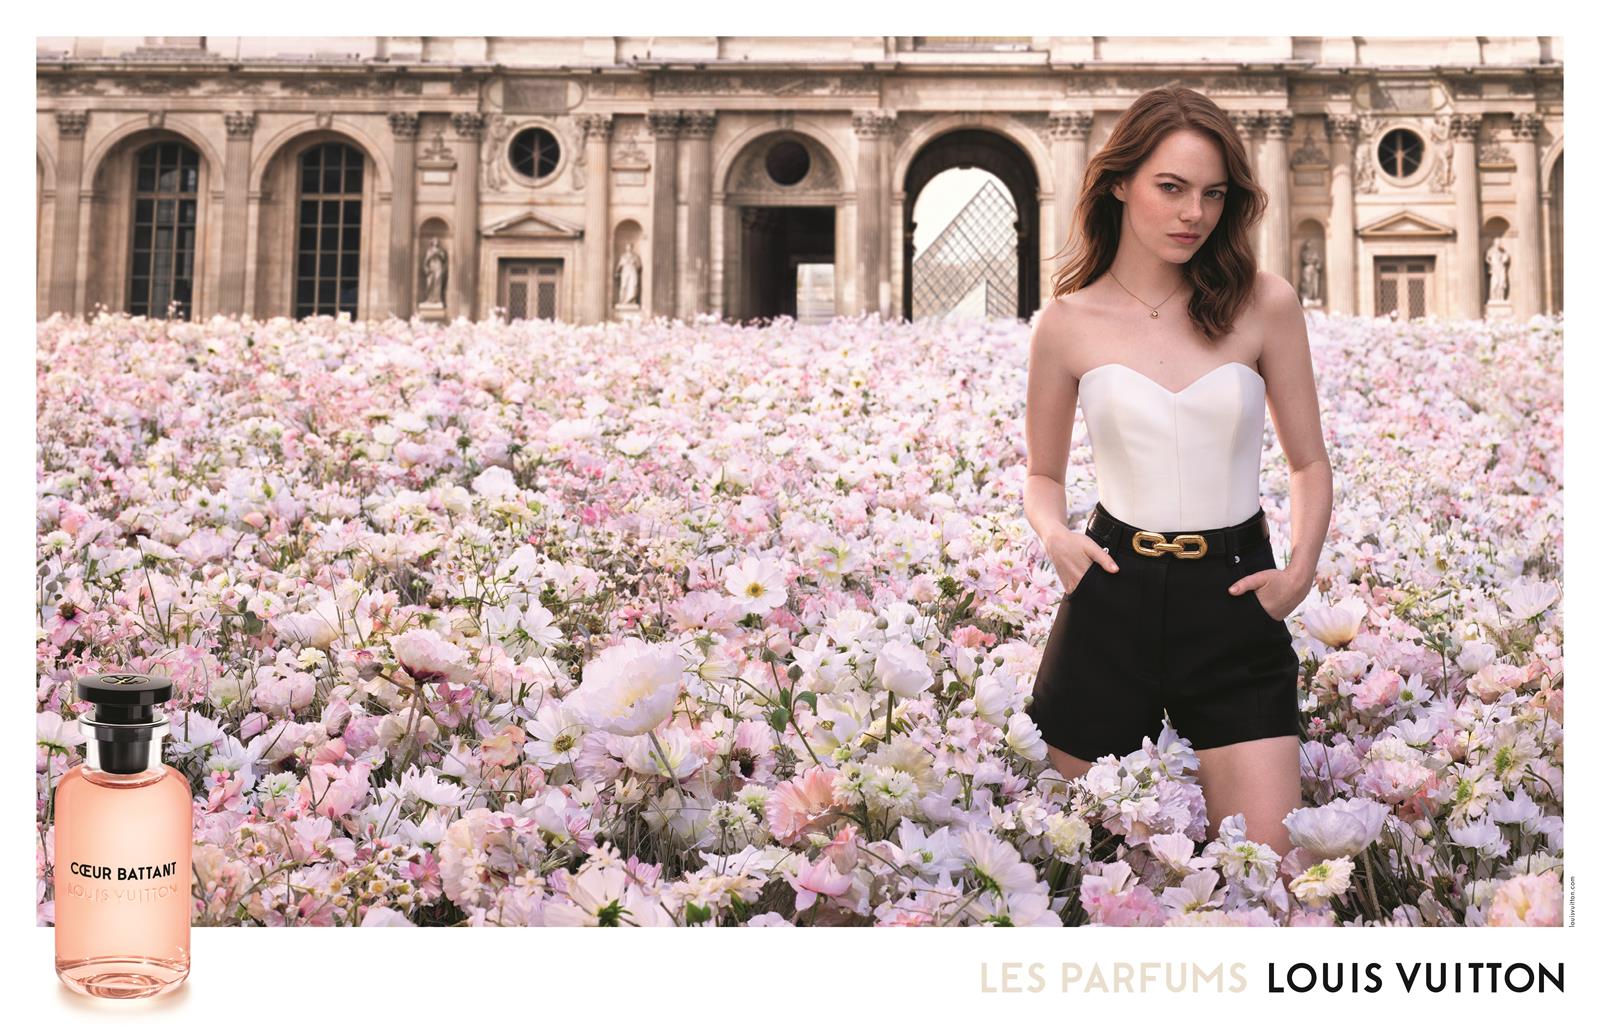 Louis Vuitton nuovo profumo femminile: l'attrice Emma Stone